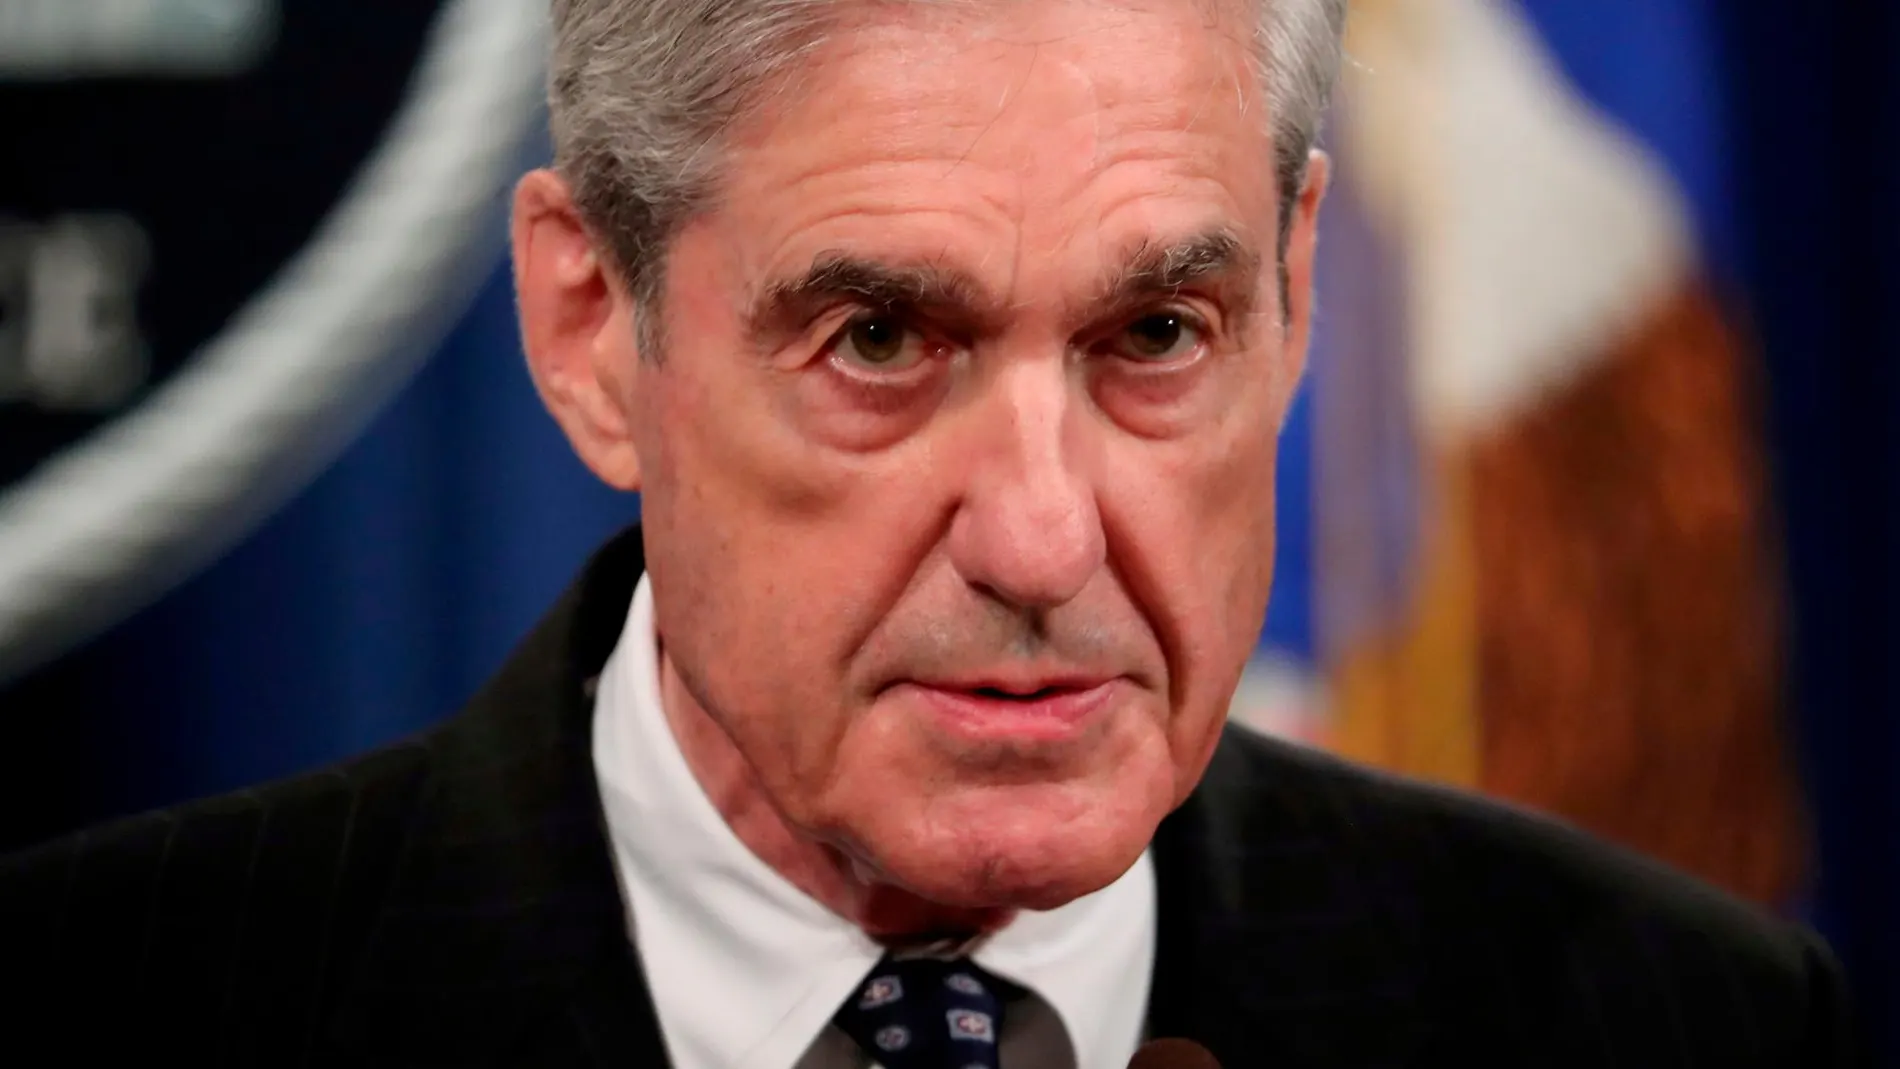 El fiscal especial, Robert Mueller, comparecerá mañana/ Reuters